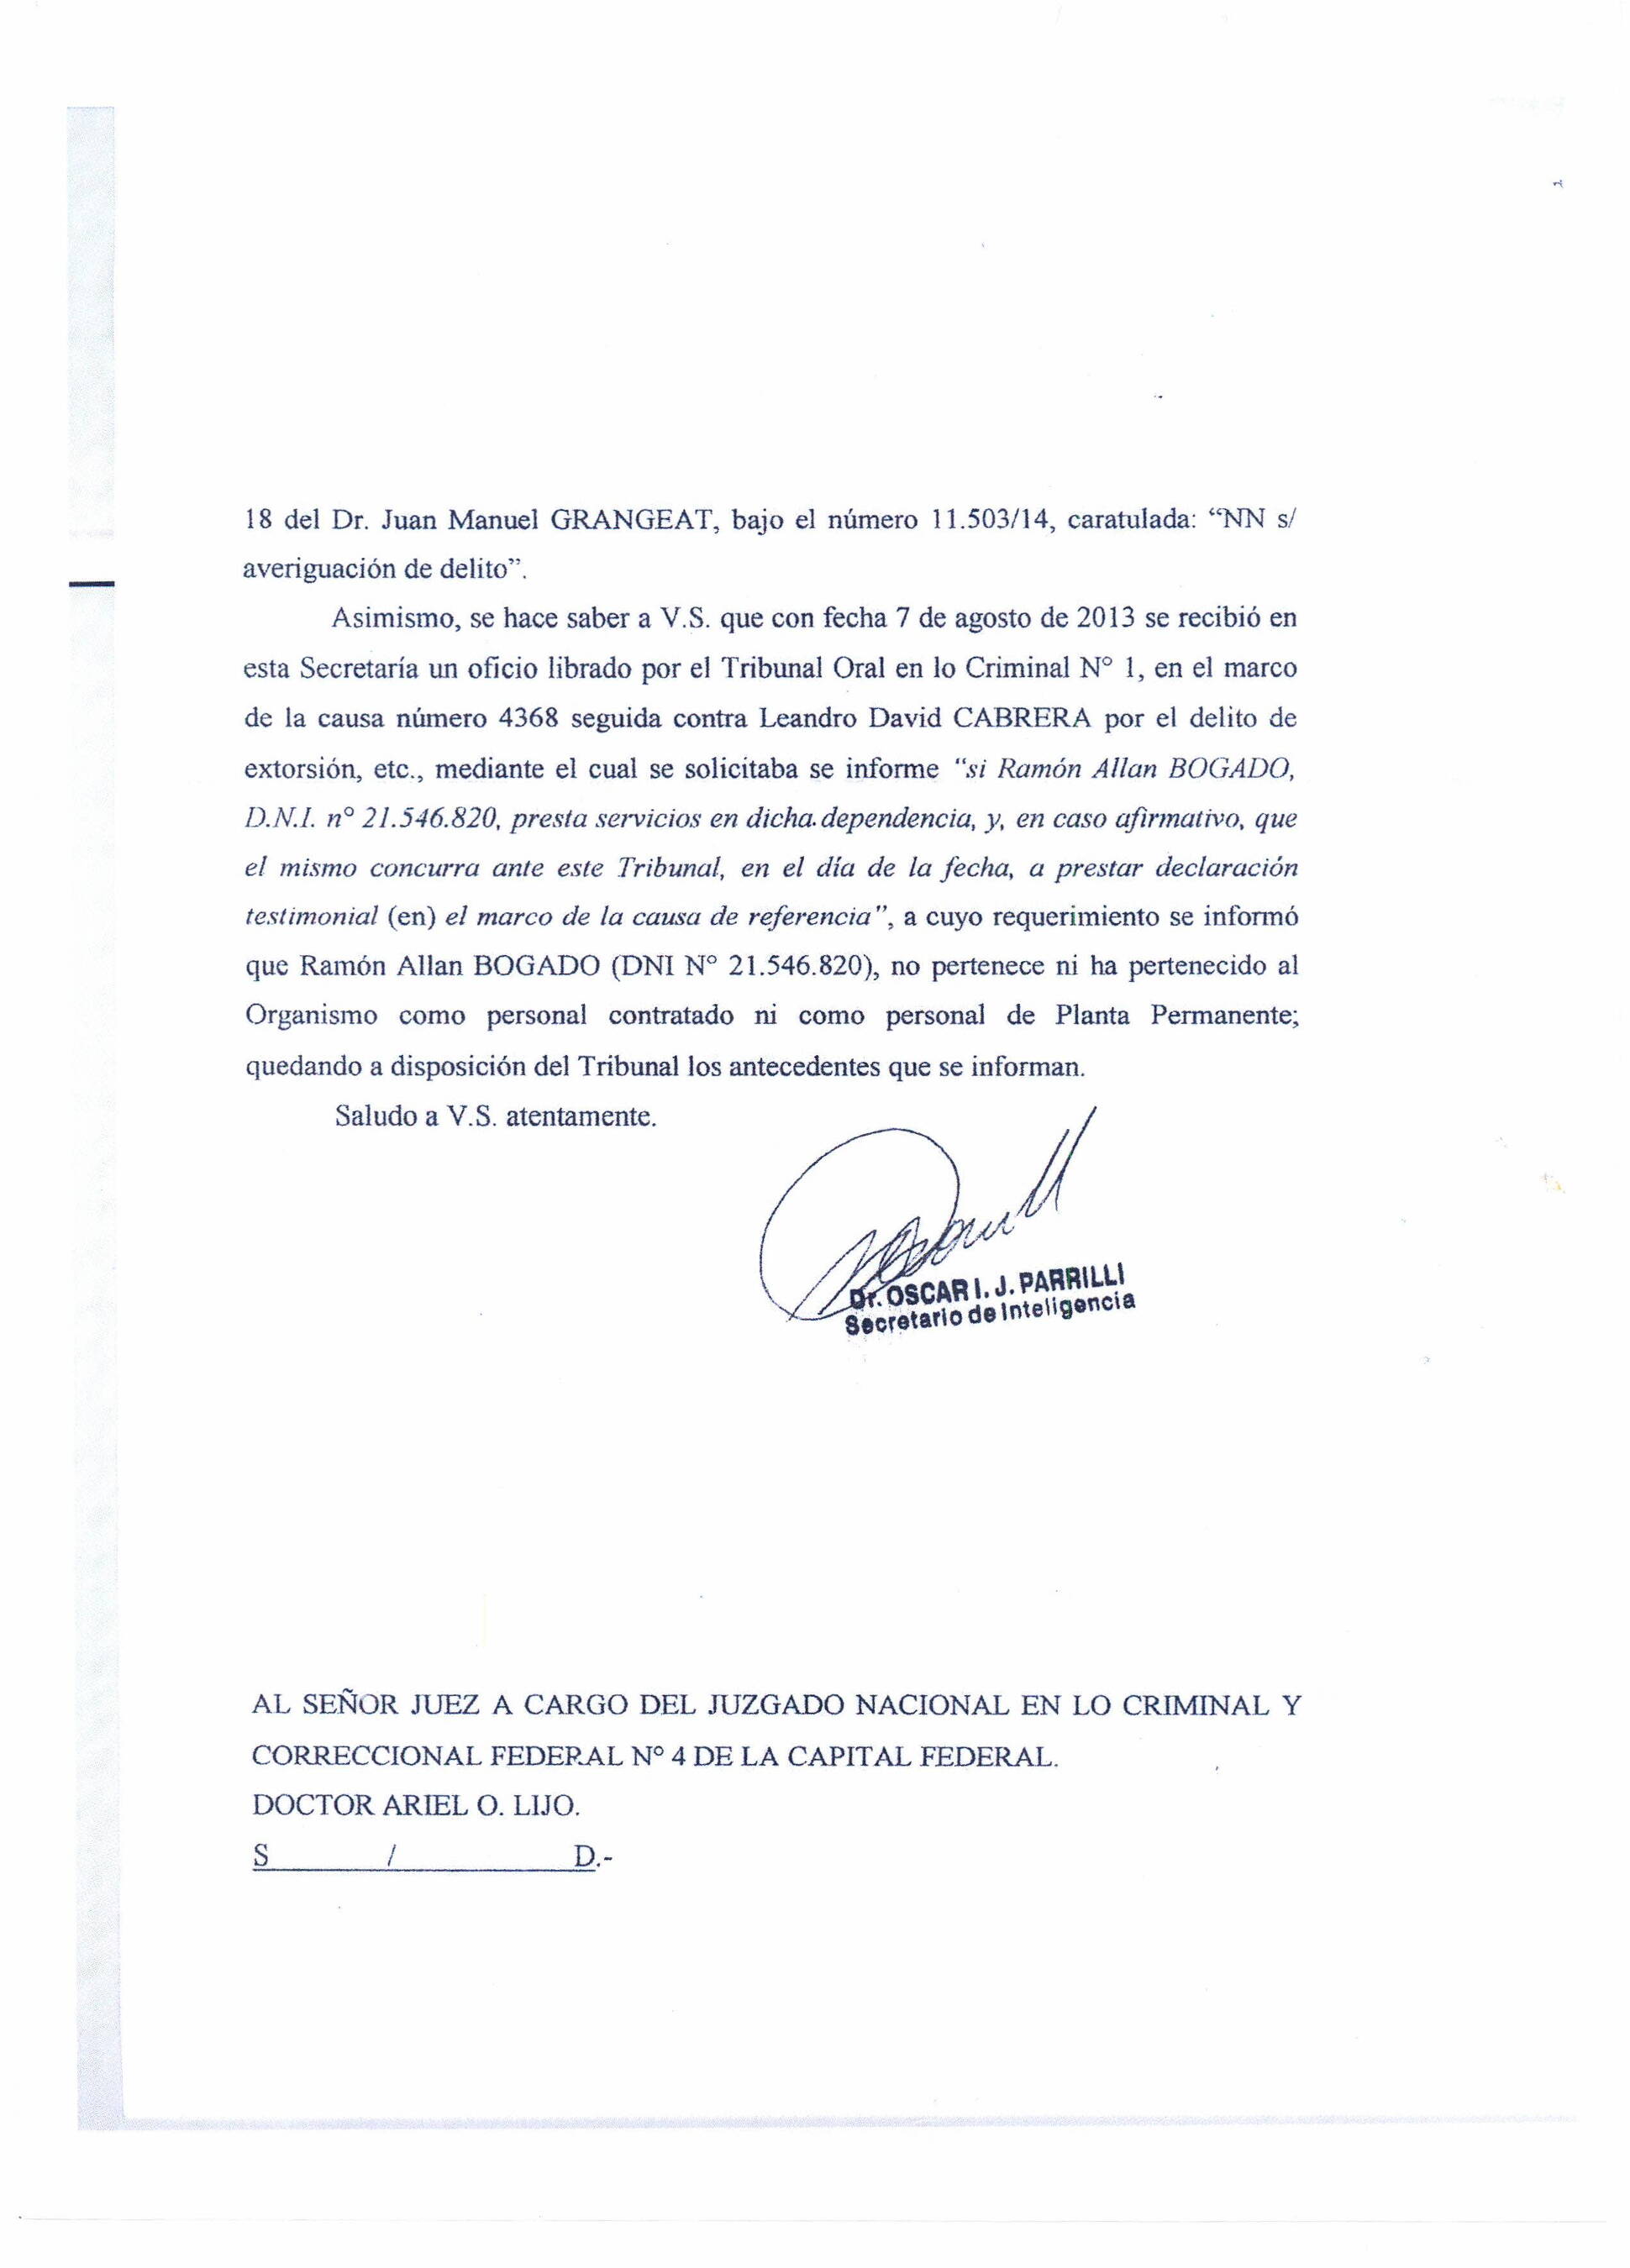 Carta del titular de la Secretaría de Inteligencia al juez Lijo